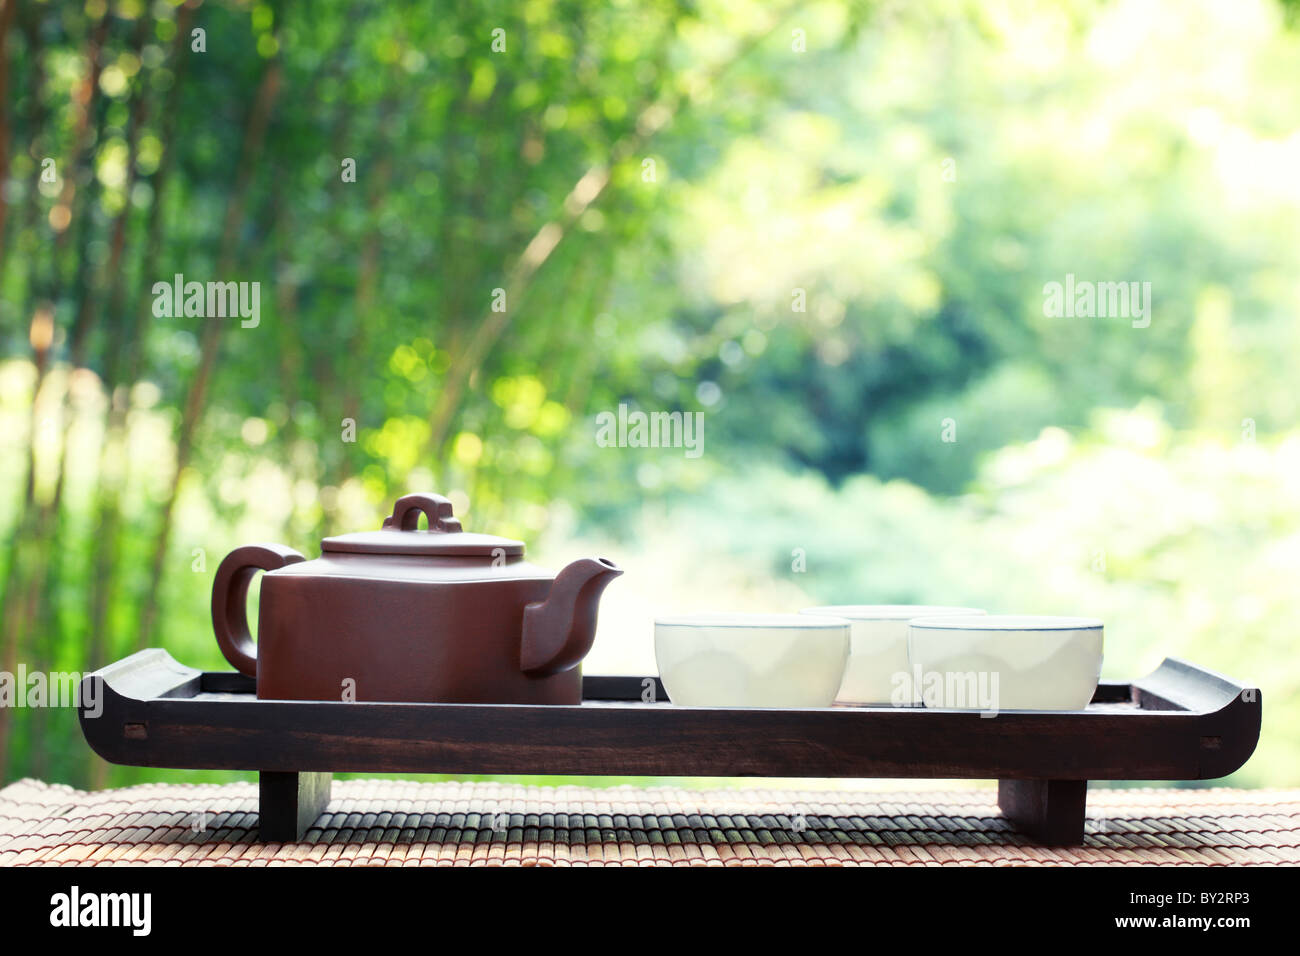 Classical asian tea set at outdoors Stock Photo